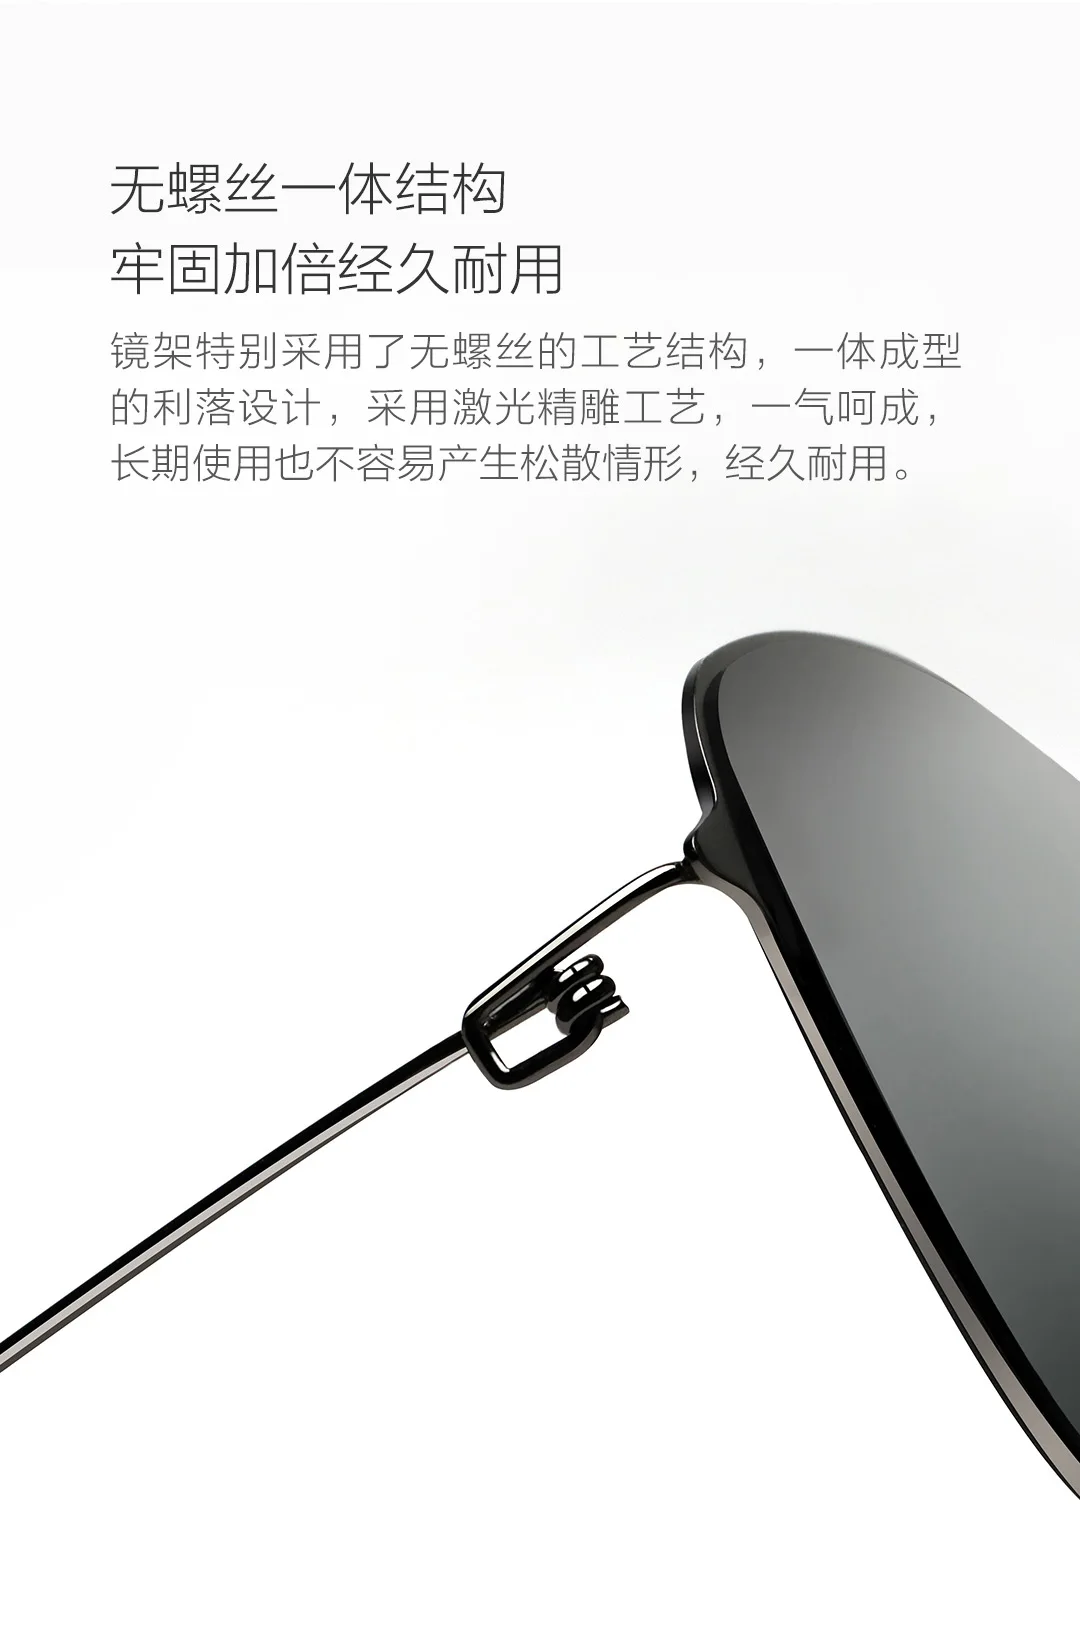 Xiaomi Mi Главная классическая коробка солнцезащитные очки Pro box градиентные серые классические квадратные из нержавеющей стали поляризованные линзы в оправе анти-УФ анти-масло